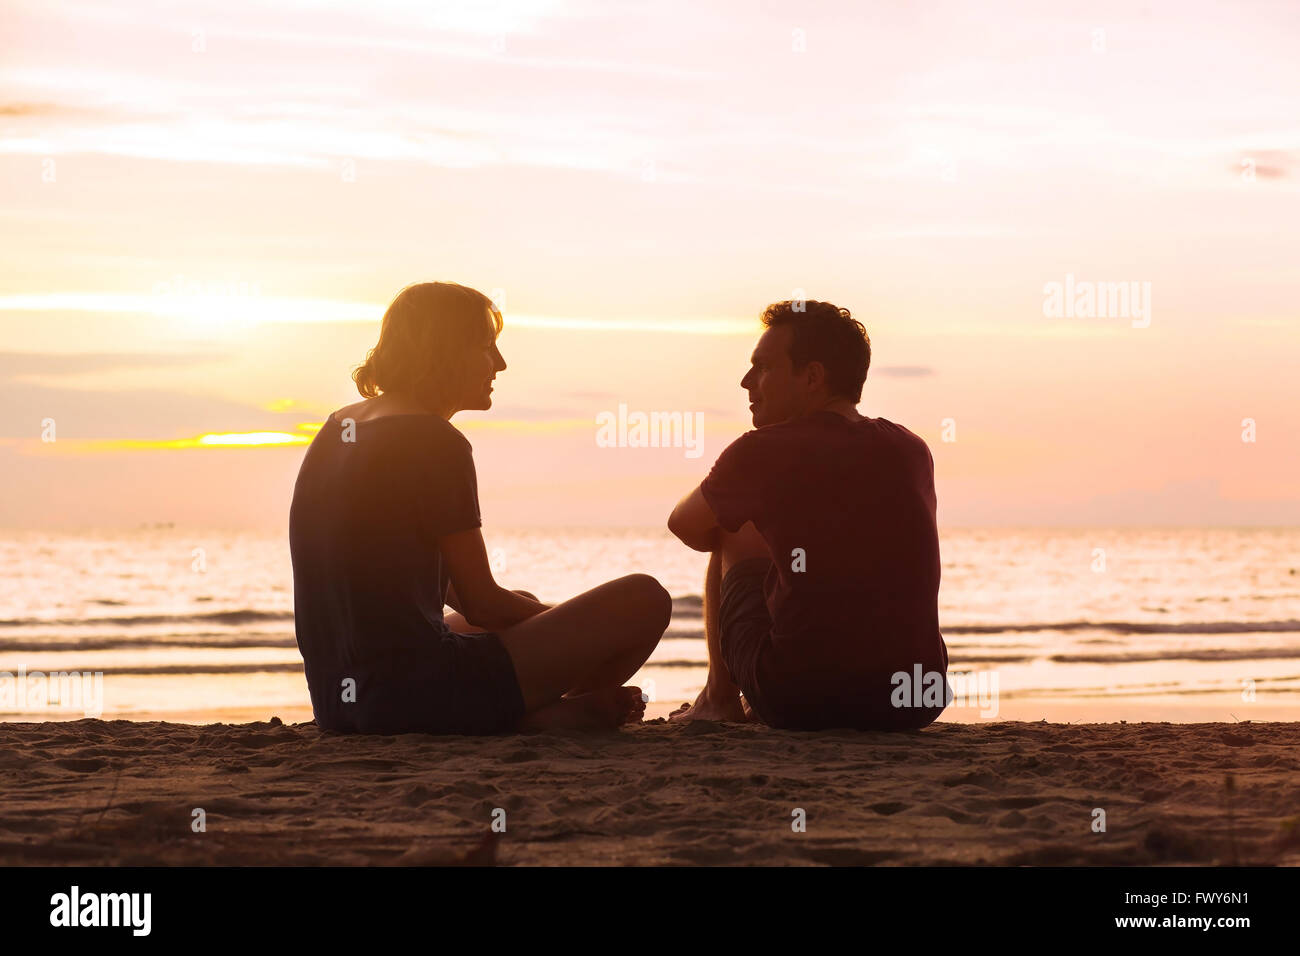 El hombre y la mujer en la playa al atardecer, pareja joven hablando cerca del mar, citas o concepto de amistad Foto de stock